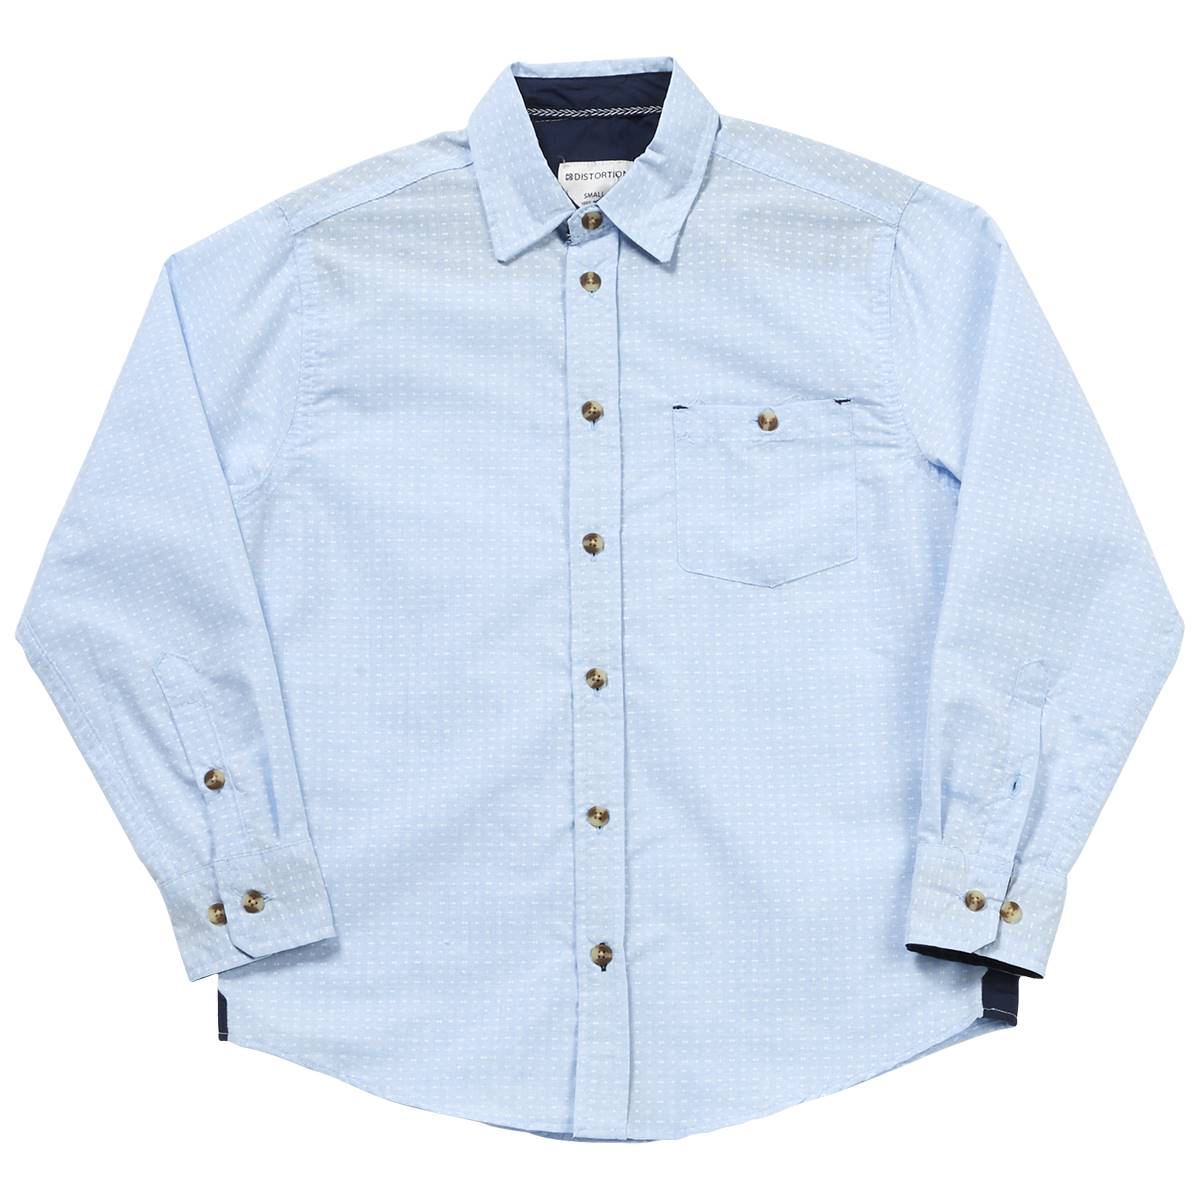 Boys (8-16) Distortion Long Sleeve Button Down Shirt - Light Blue